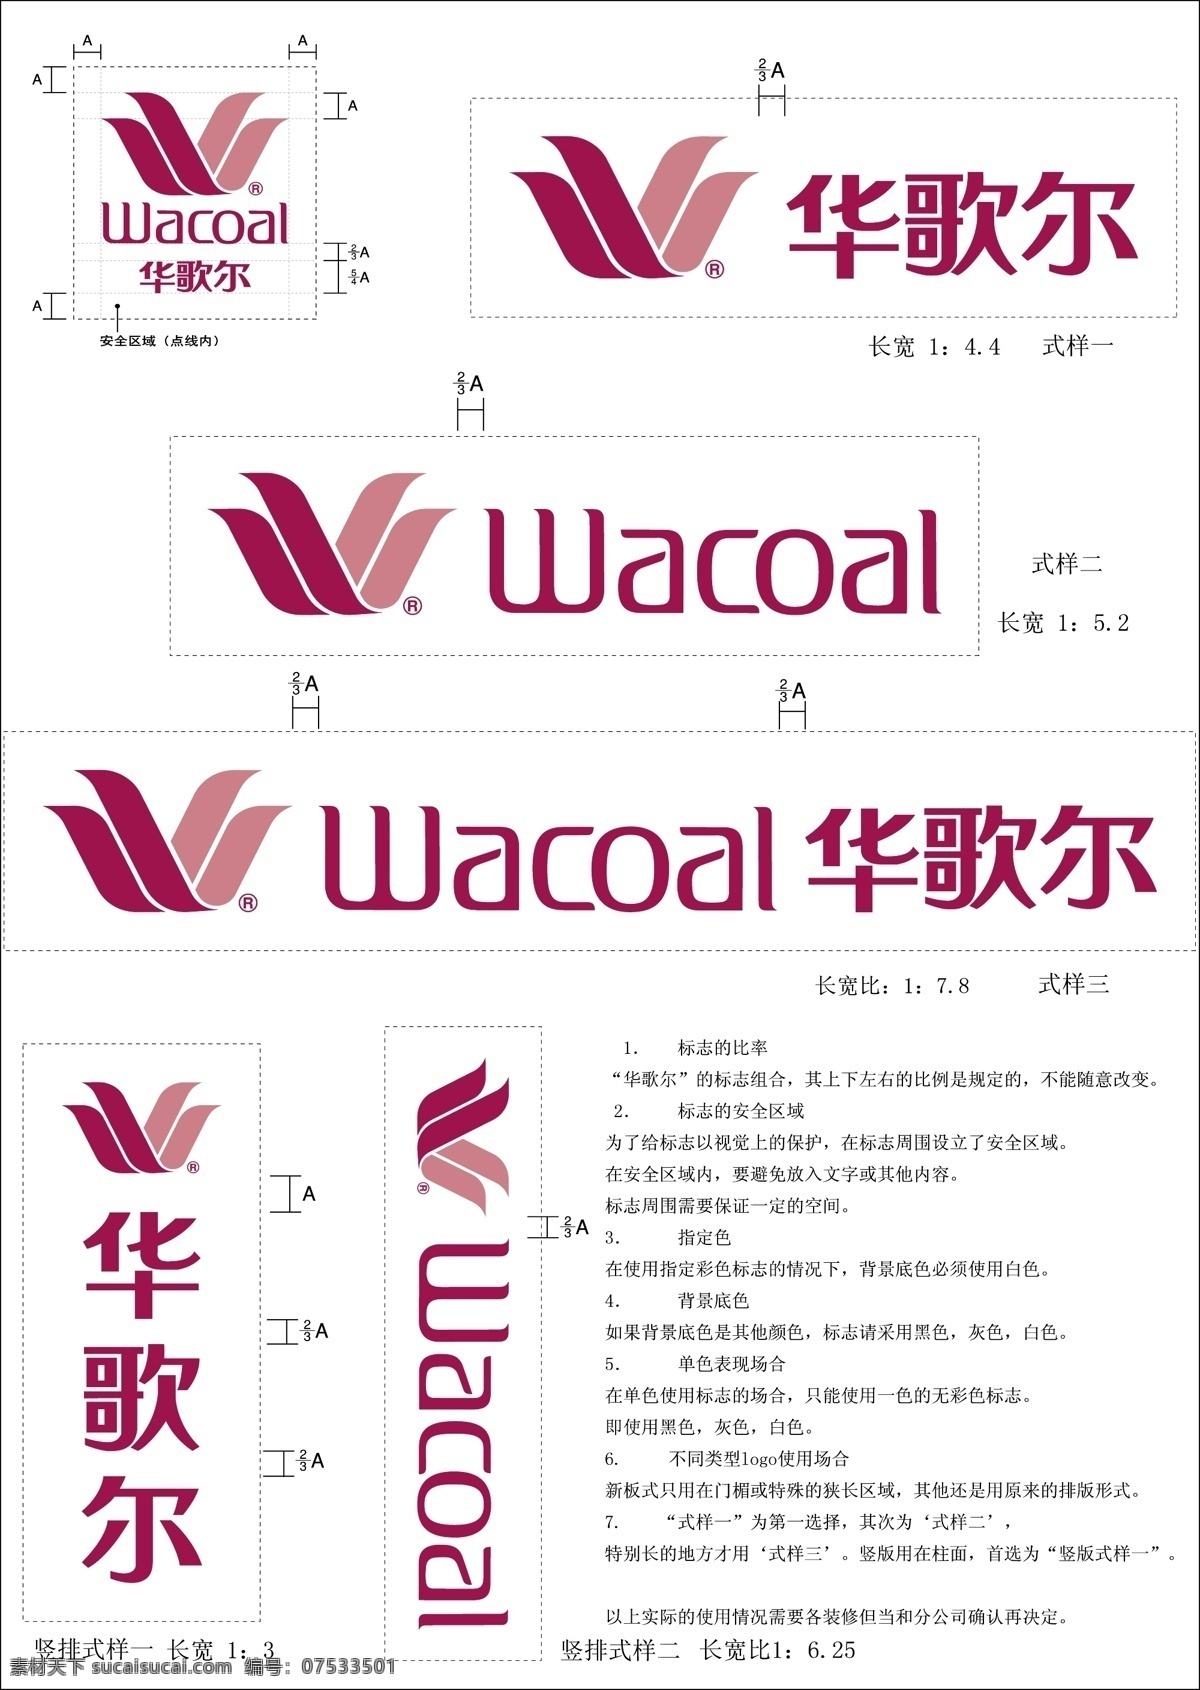 华 歌 尔 logo 使用 标准 标识标志图标 内衣 企业 标志 华歌尔 矢量 psd源文件 logo设计